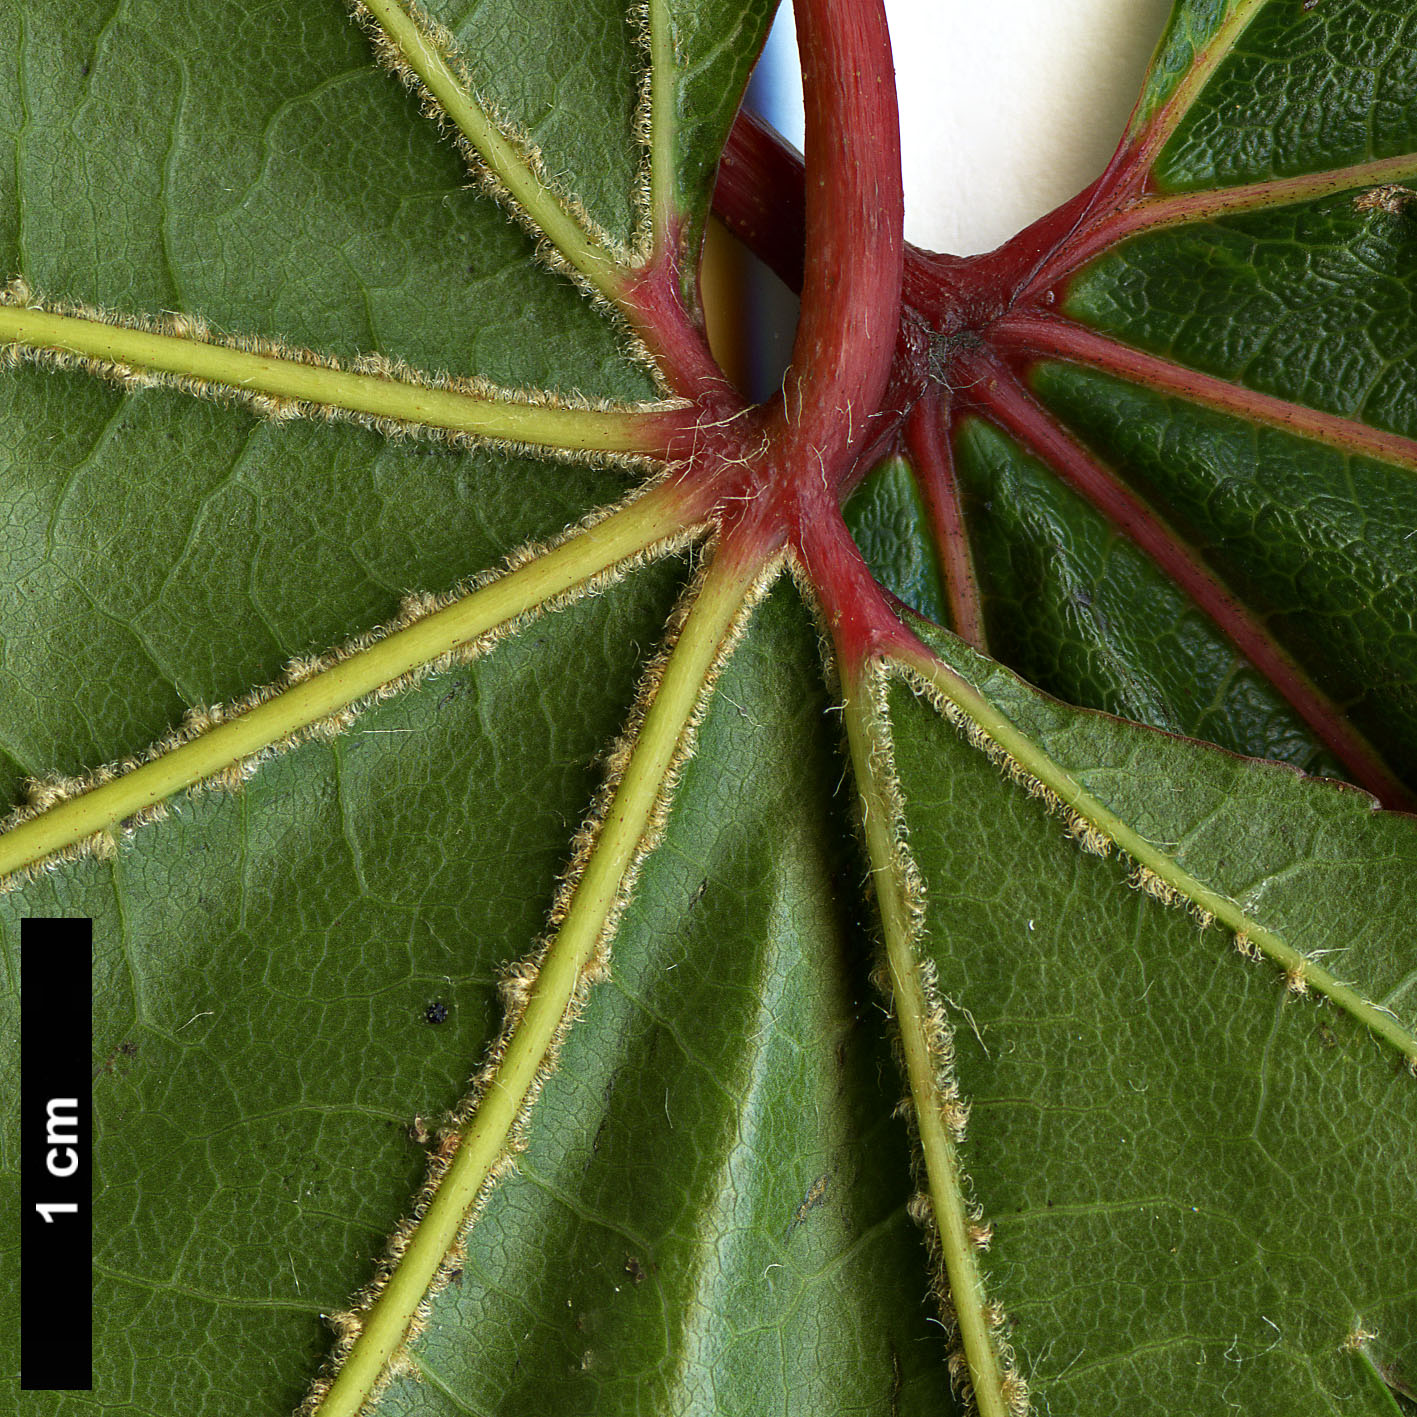 High resolution image: Family: Sapindaceae - Genus: Acer - Taxon: campbellii - SpeciesSub: subsp. campbellii